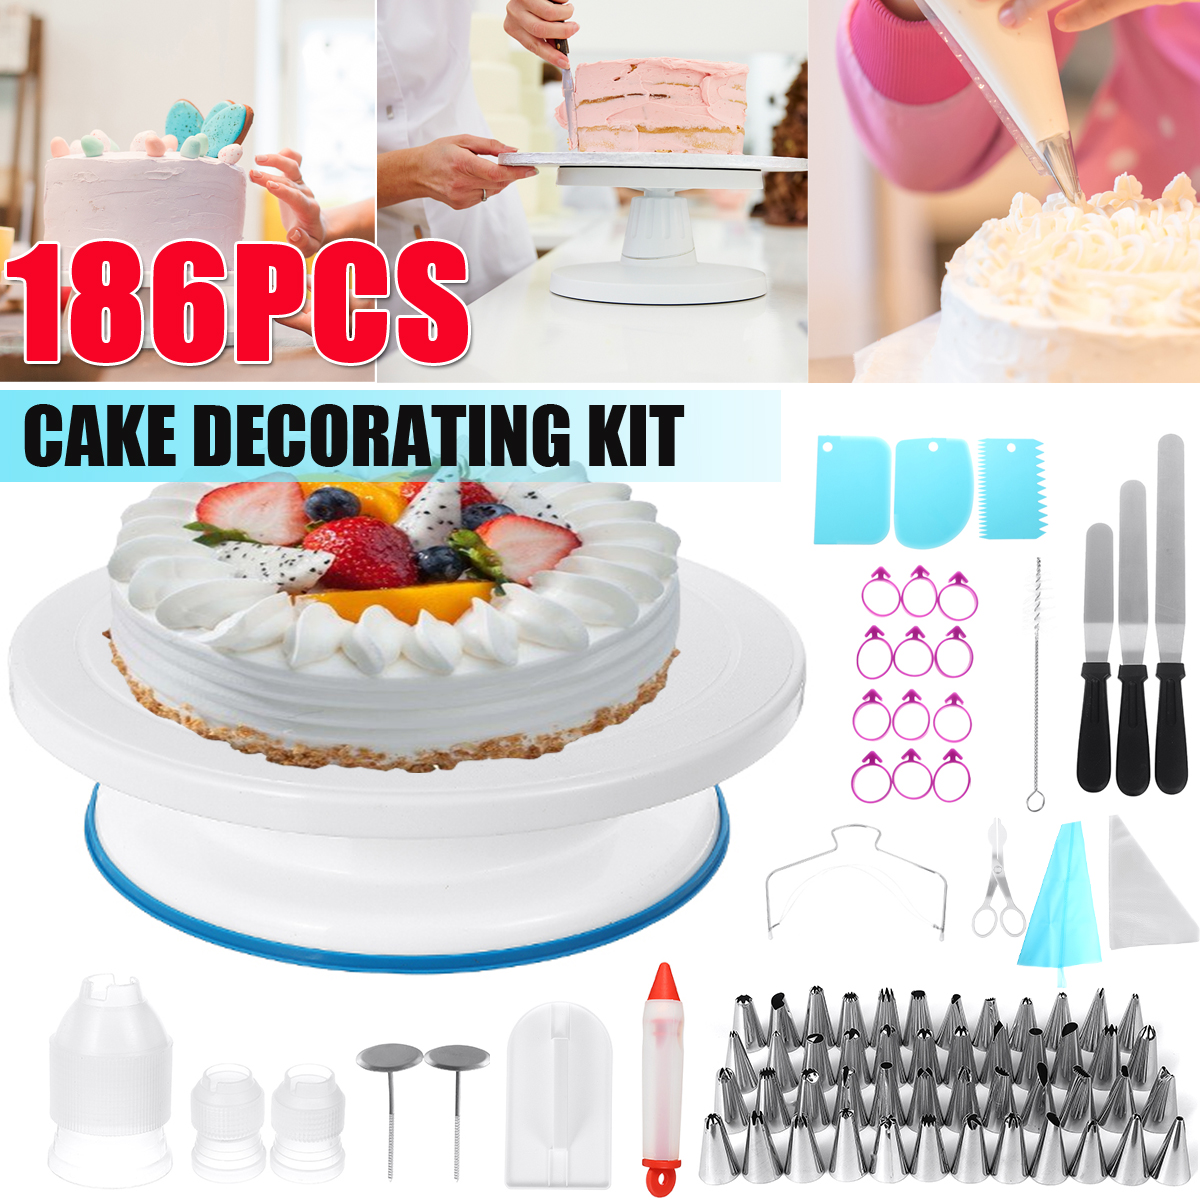 186Pcs-Cake-Decorating-Tool-Kit-Baking-Fondant-Supplies-Turntable-Bag-Tip-Nozzle-1765683-1